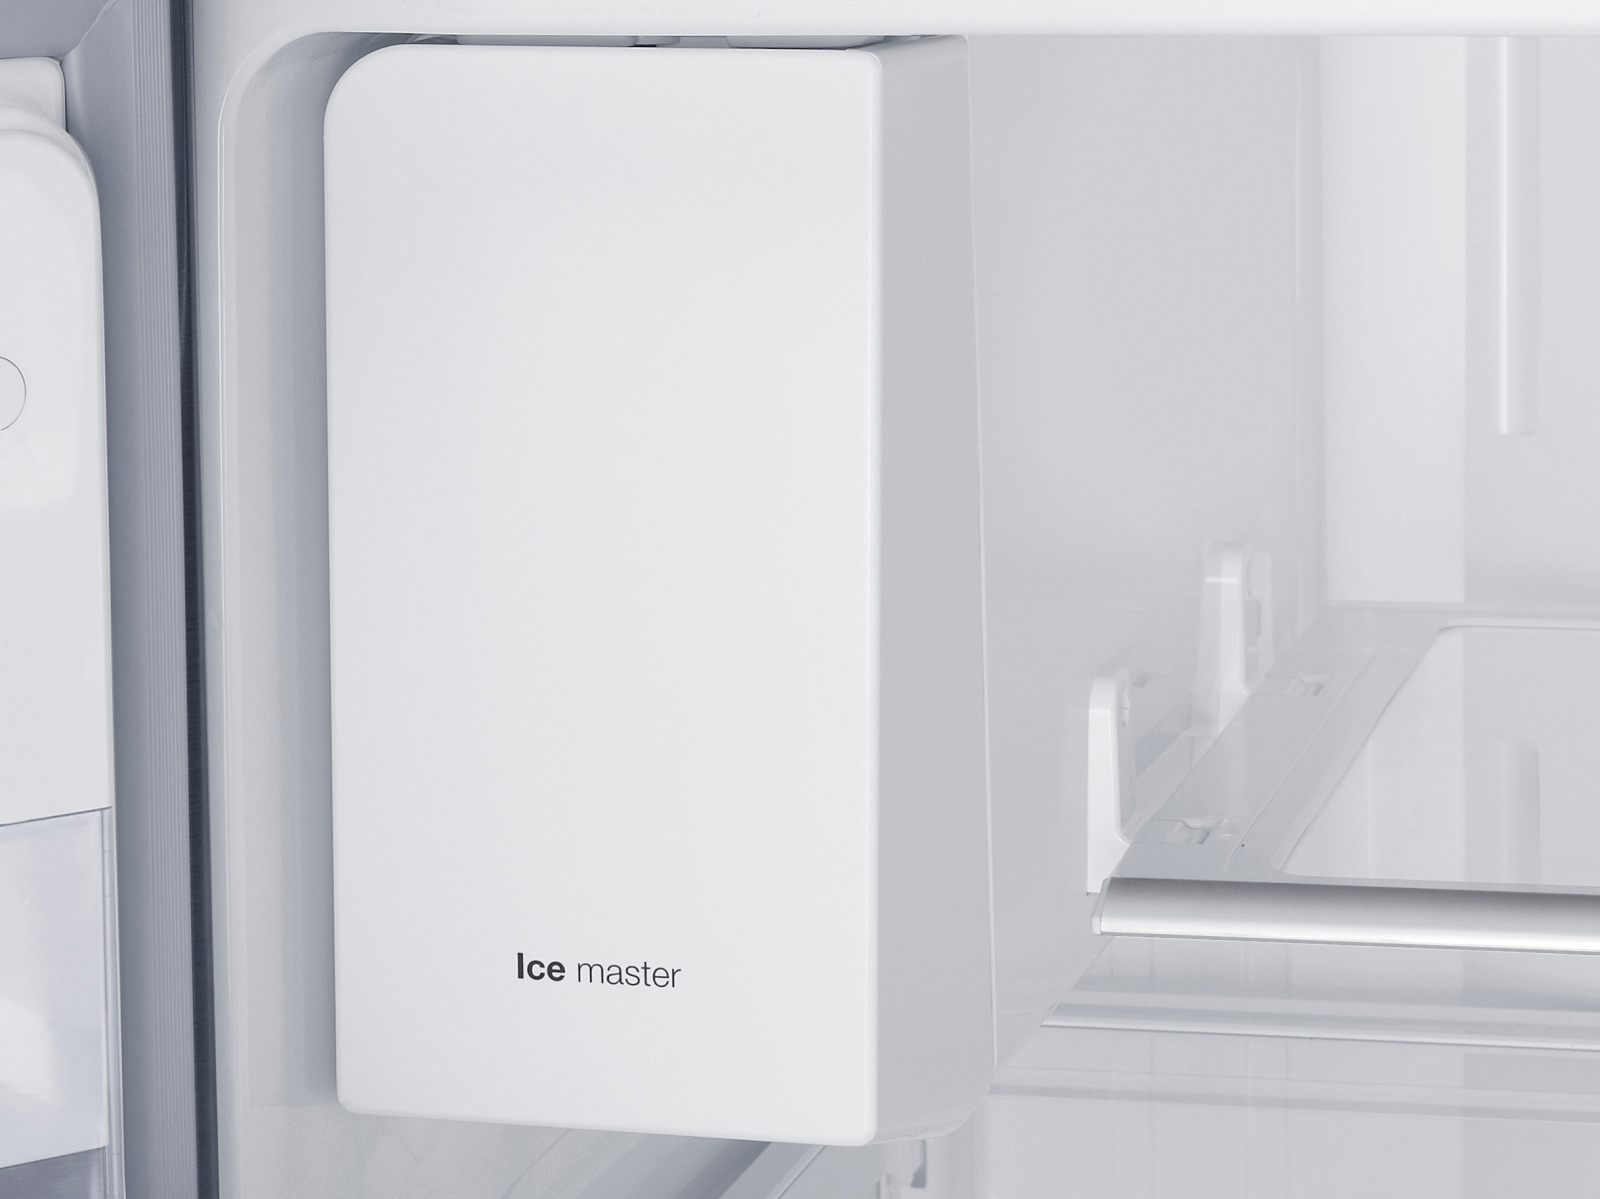 Réfrigérateur congélateur américain - RF28HMELBSR/AA - SAMSUNG Home  Appliances - en pose libre / avec congélateur en bas / résidentiel